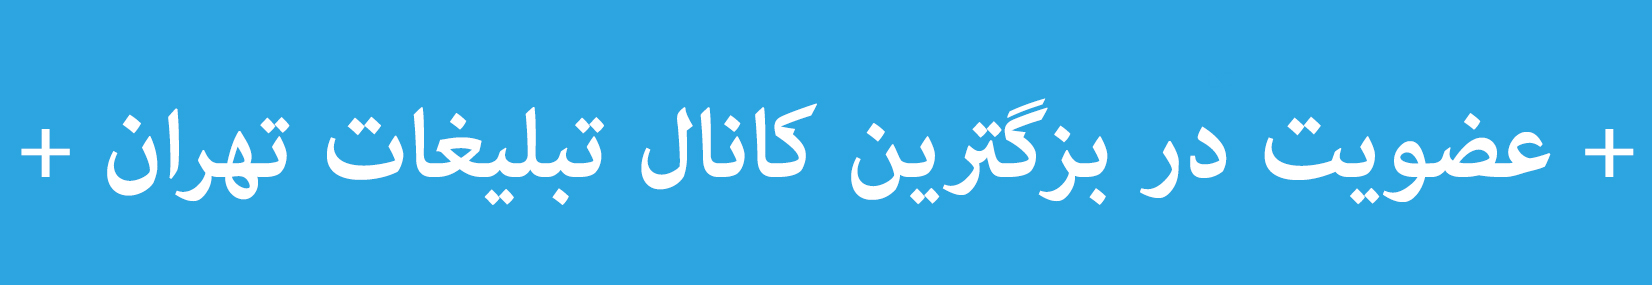 عضویت در بزگترین کانال تبلیغات تهران